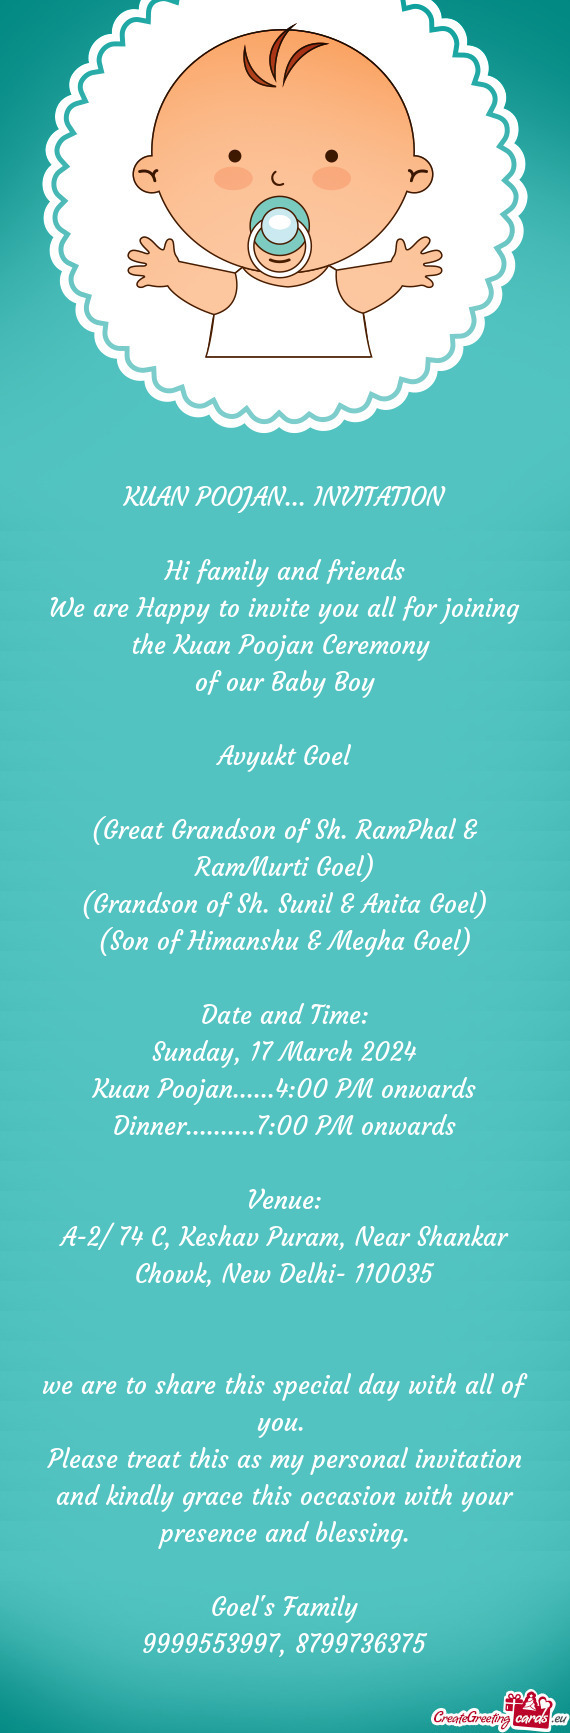 Sunil & Anita Goel) (Son of Himanshu & Megha Goel) Date and Time